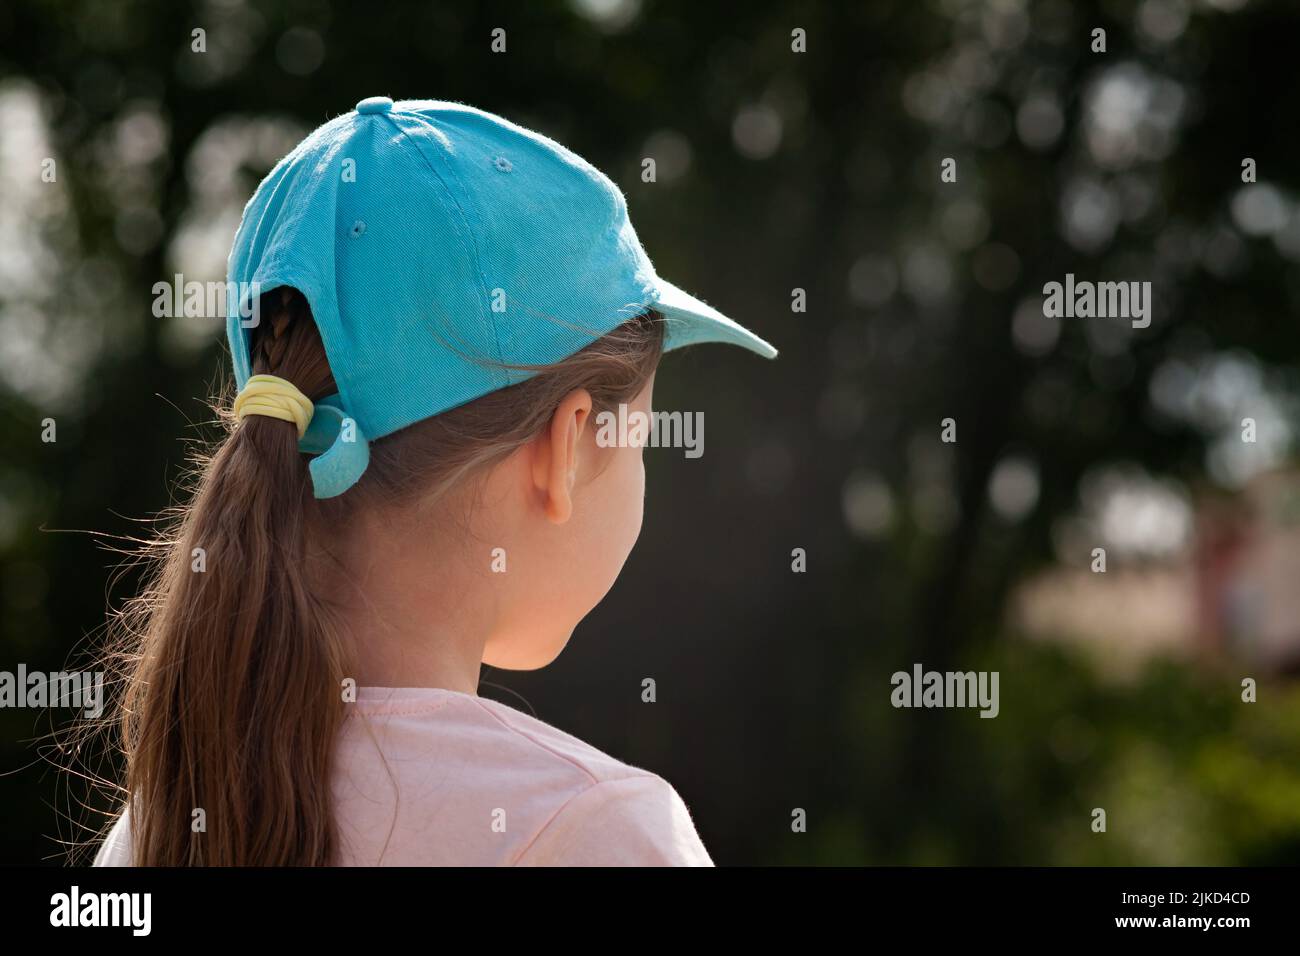 Kind im Grundschulalter, Mädchen, das etwas ansieht, von hinten gesehen, Platz kopieren, Rückseite des Kopfes Nahaufnahme Baseballmütze verschwommener Hintergrund, ein pe Stockfoto